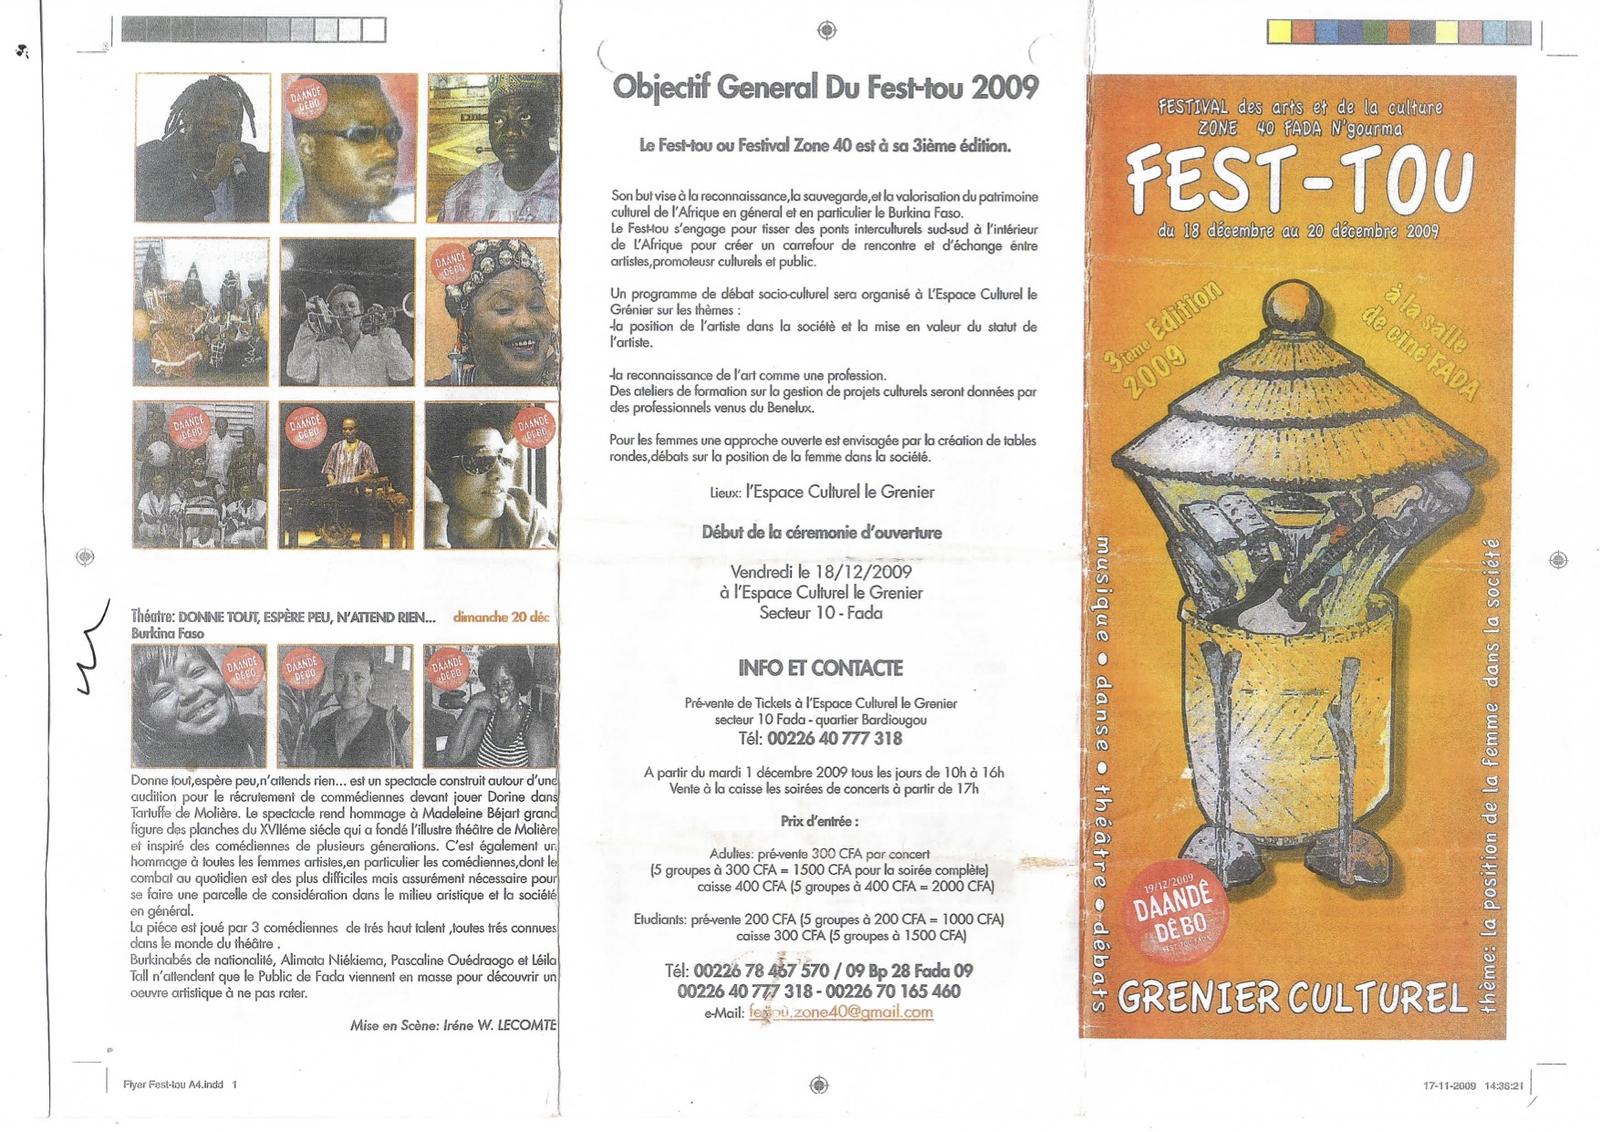 Programme du Fest-tou (18 au 20 décembre 2009)